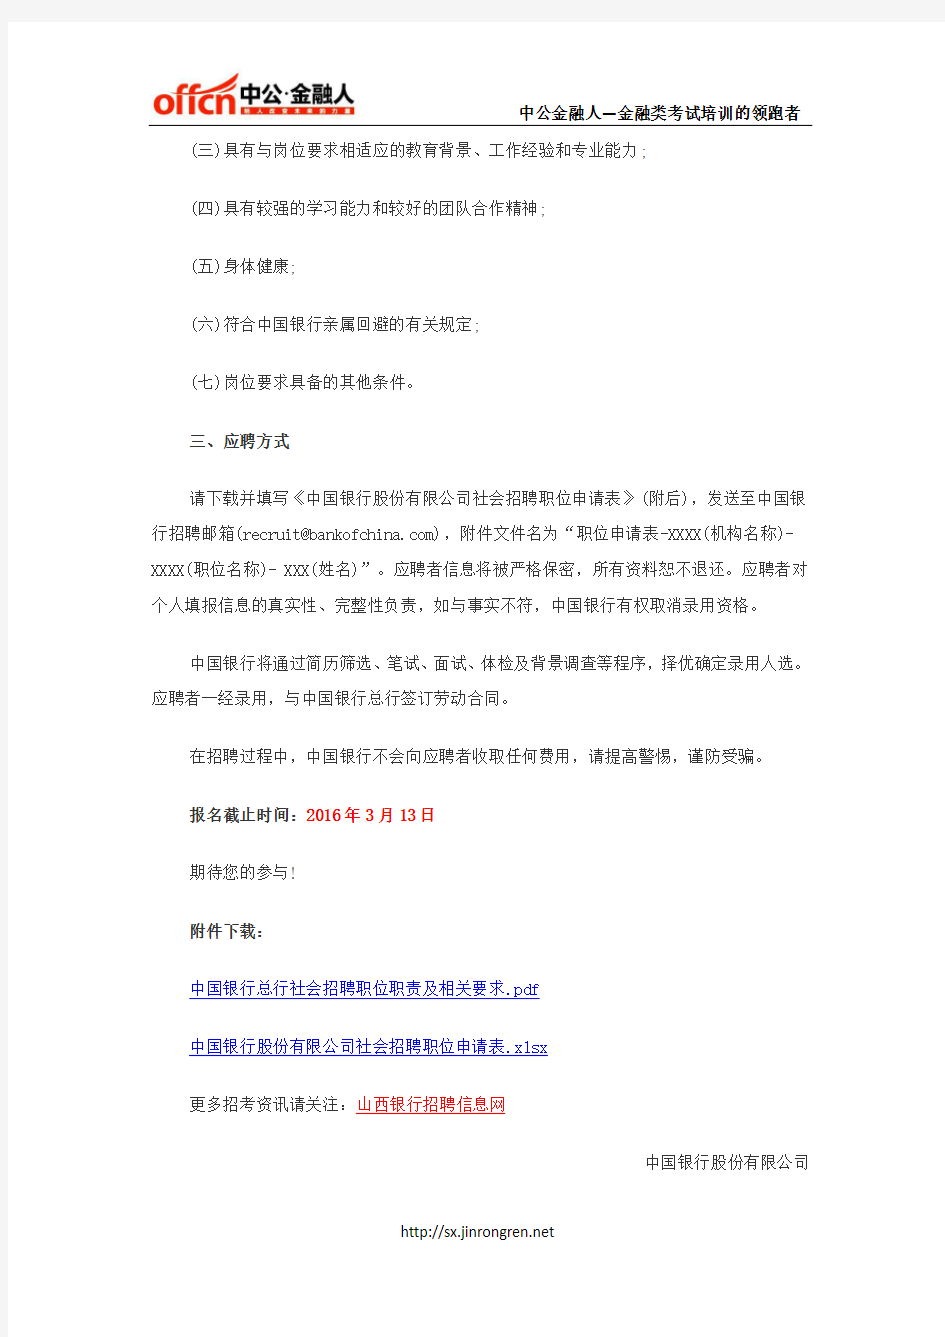 中国银行总行社会招聘8人公告